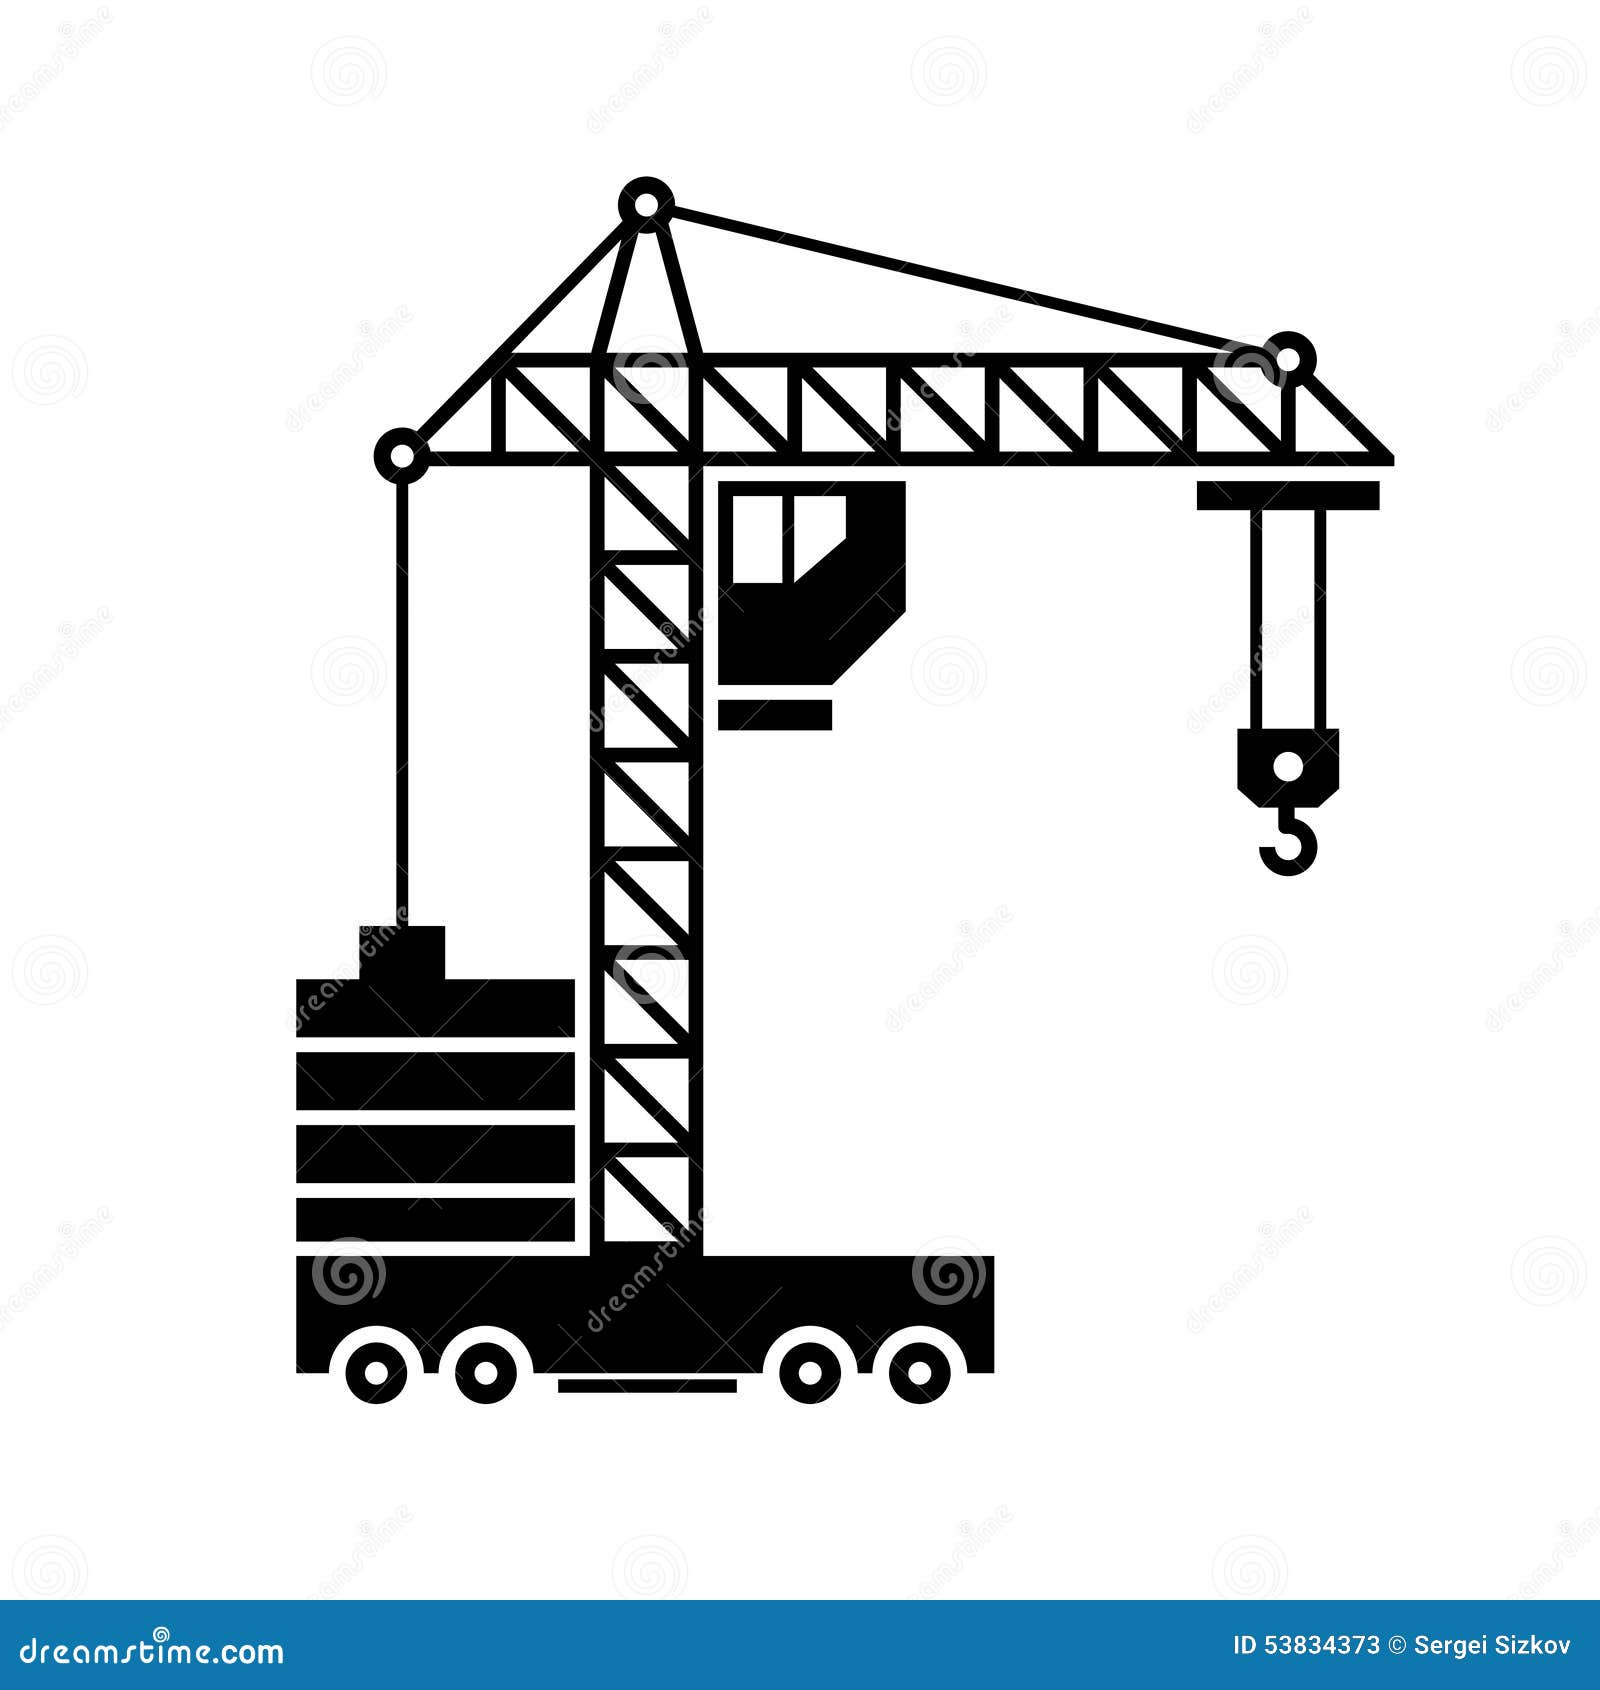 crane icon. silhouette on white background. 